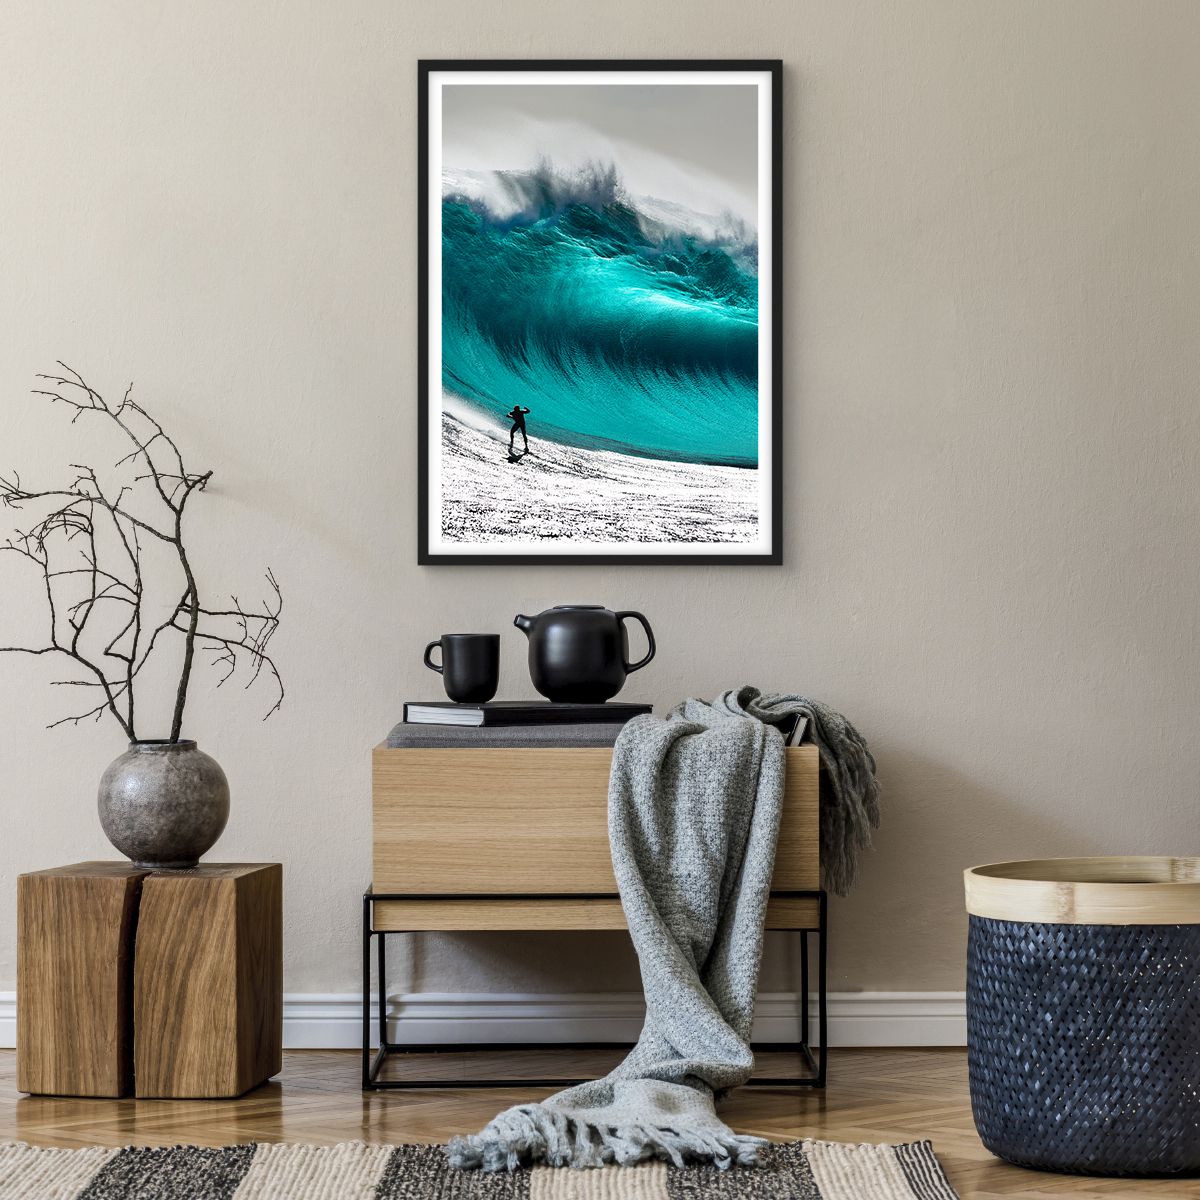 Poster in einem schwarzem Rahmen Surfen, Poster in einem schwarzem Rahmen Hohe Welle, Poster in einem schwarzem Rahmen Surfer, Poster in einem schwarzem Rahmen Meer, Poster in einem schwarzem Rahmen Sport